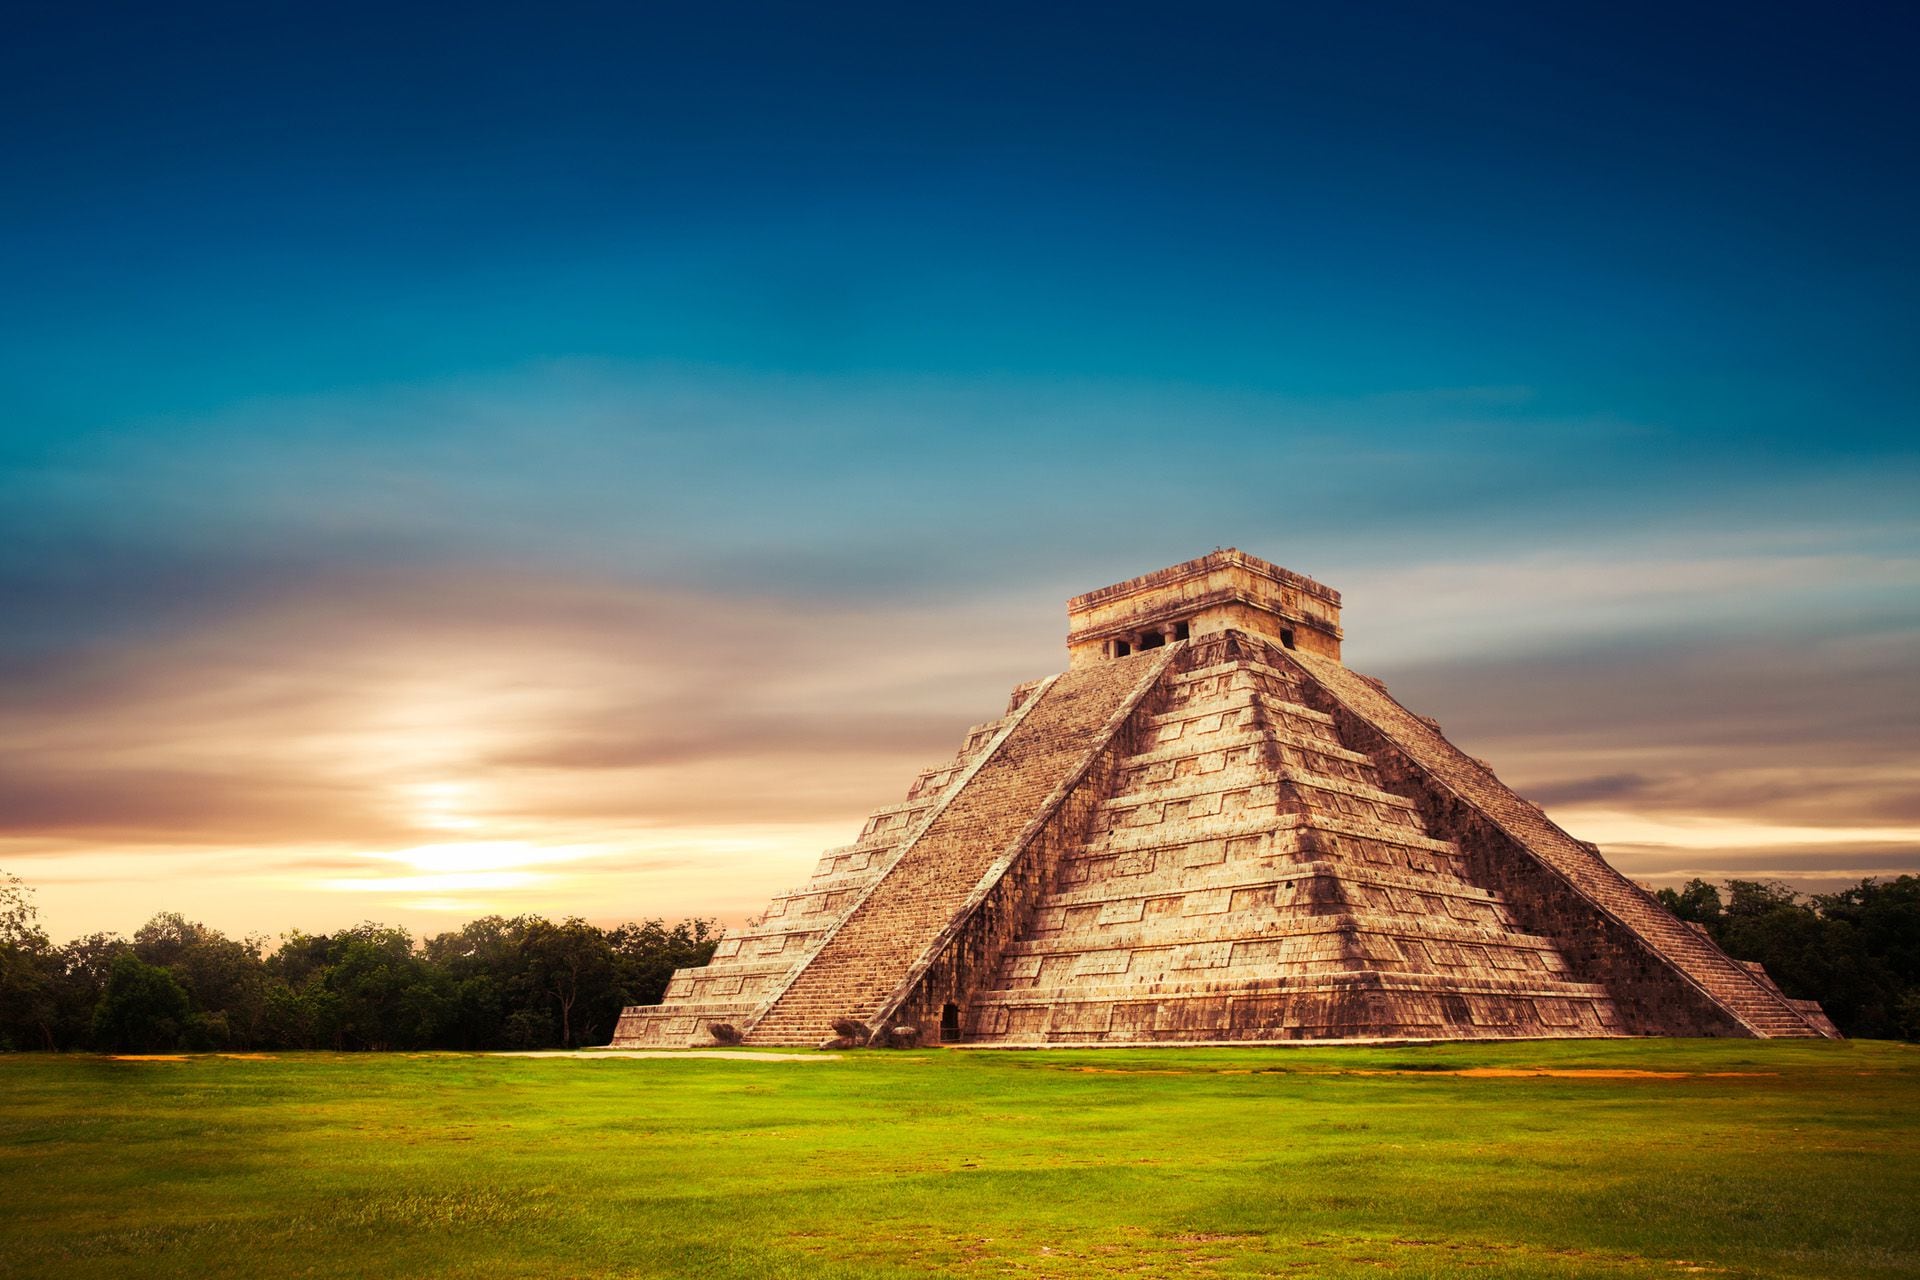 La Península de Yucatán en México revela tesoros de la historia maya, con rutas que conectan comunidades mayas y cenotes, ofreciendo una inmersión profunda en su cultura ancestral (iStock)